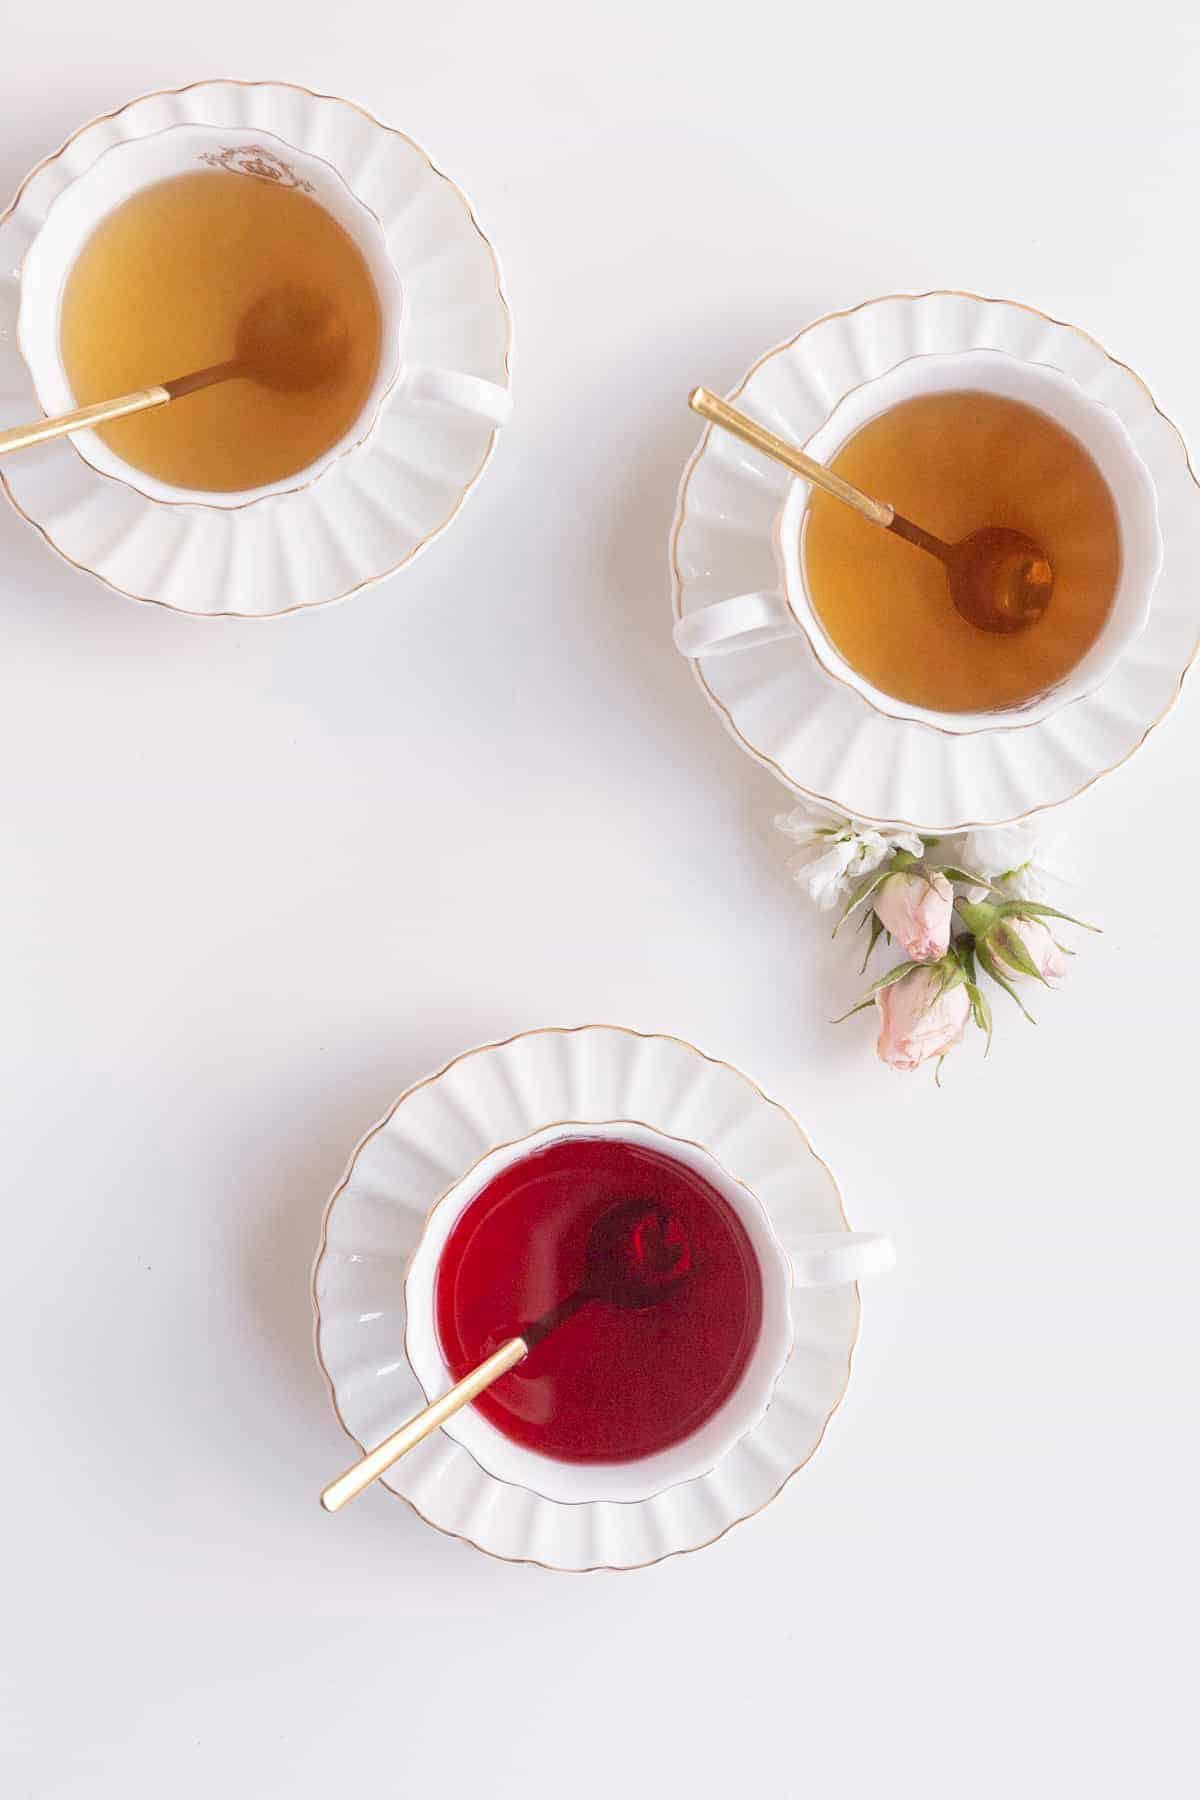 herbal tea with honey pairings - 3 cups of herbal teas